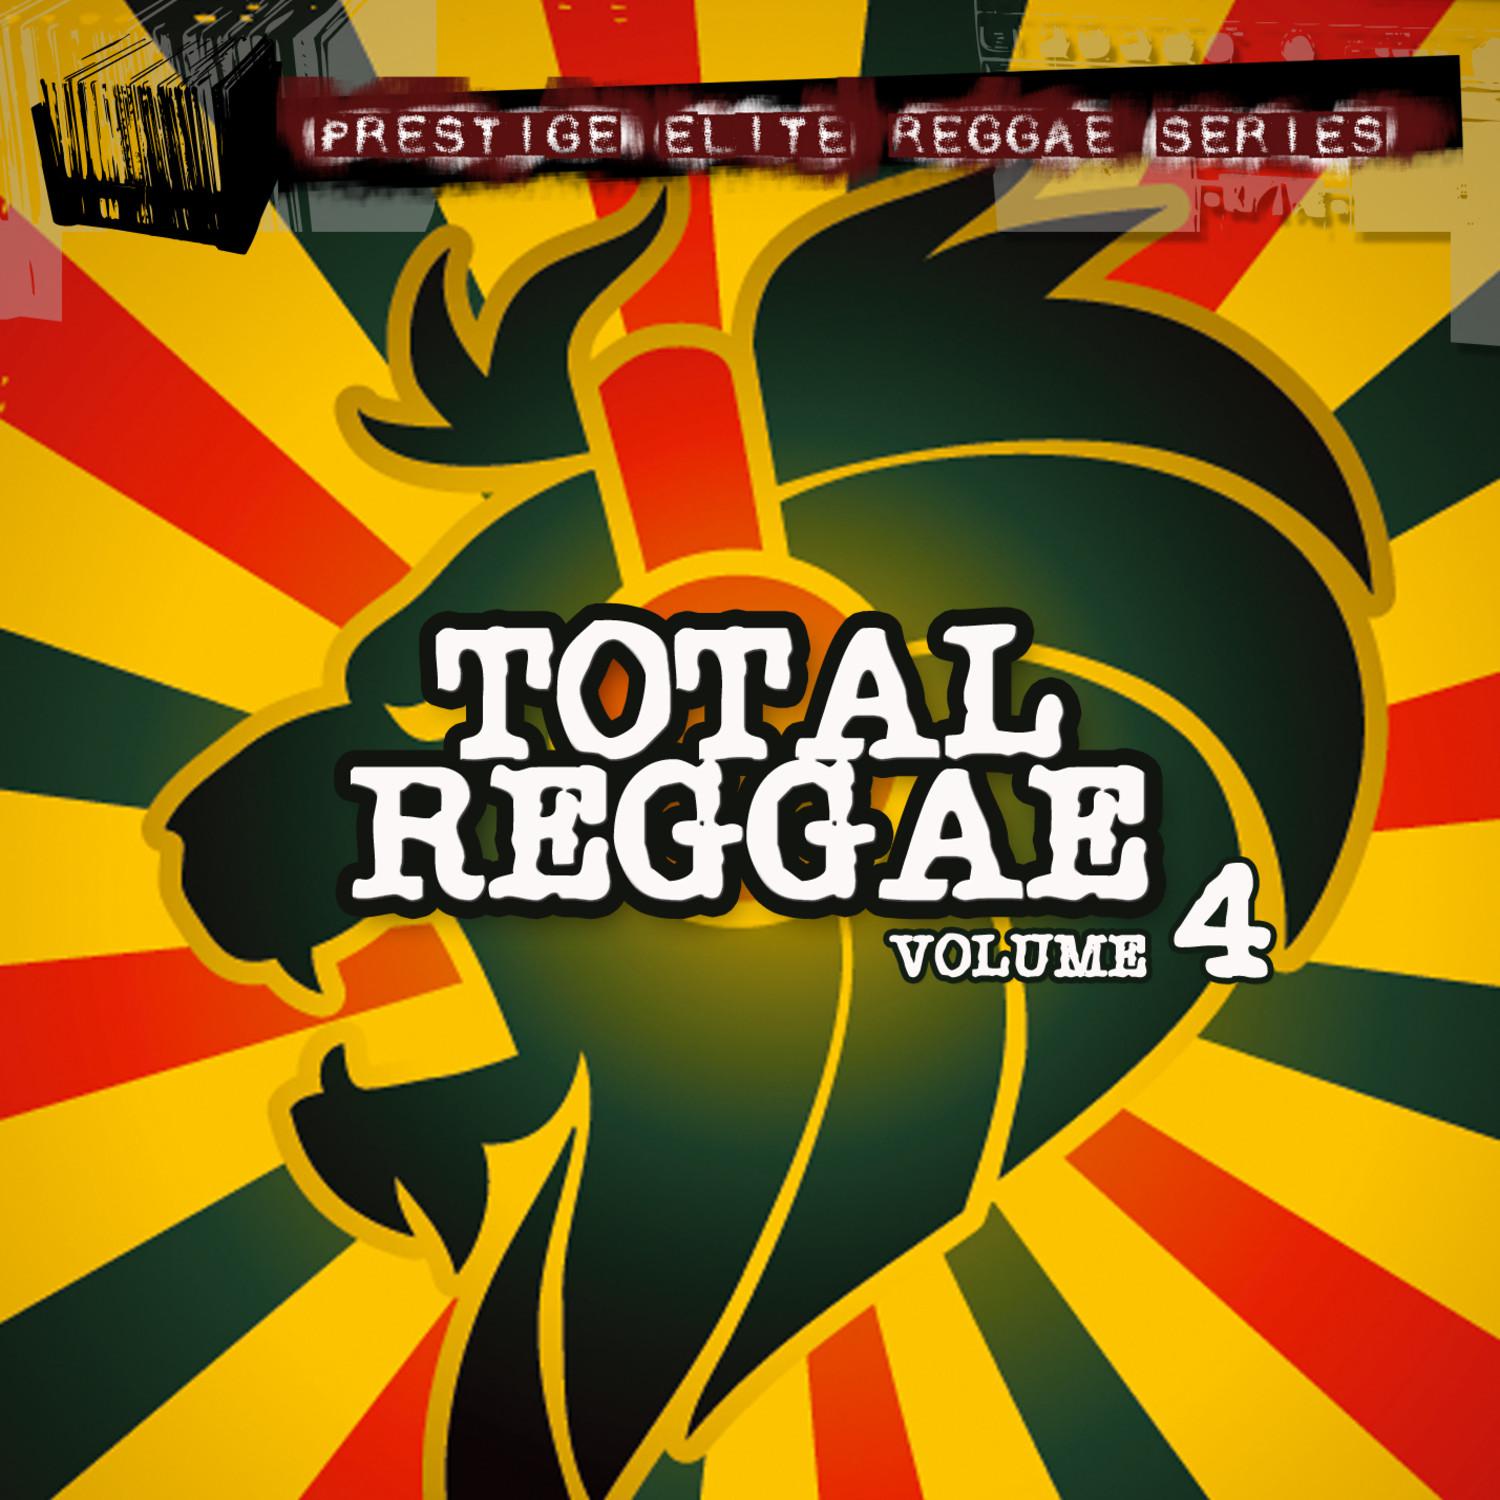 Total Reggae Vol 4